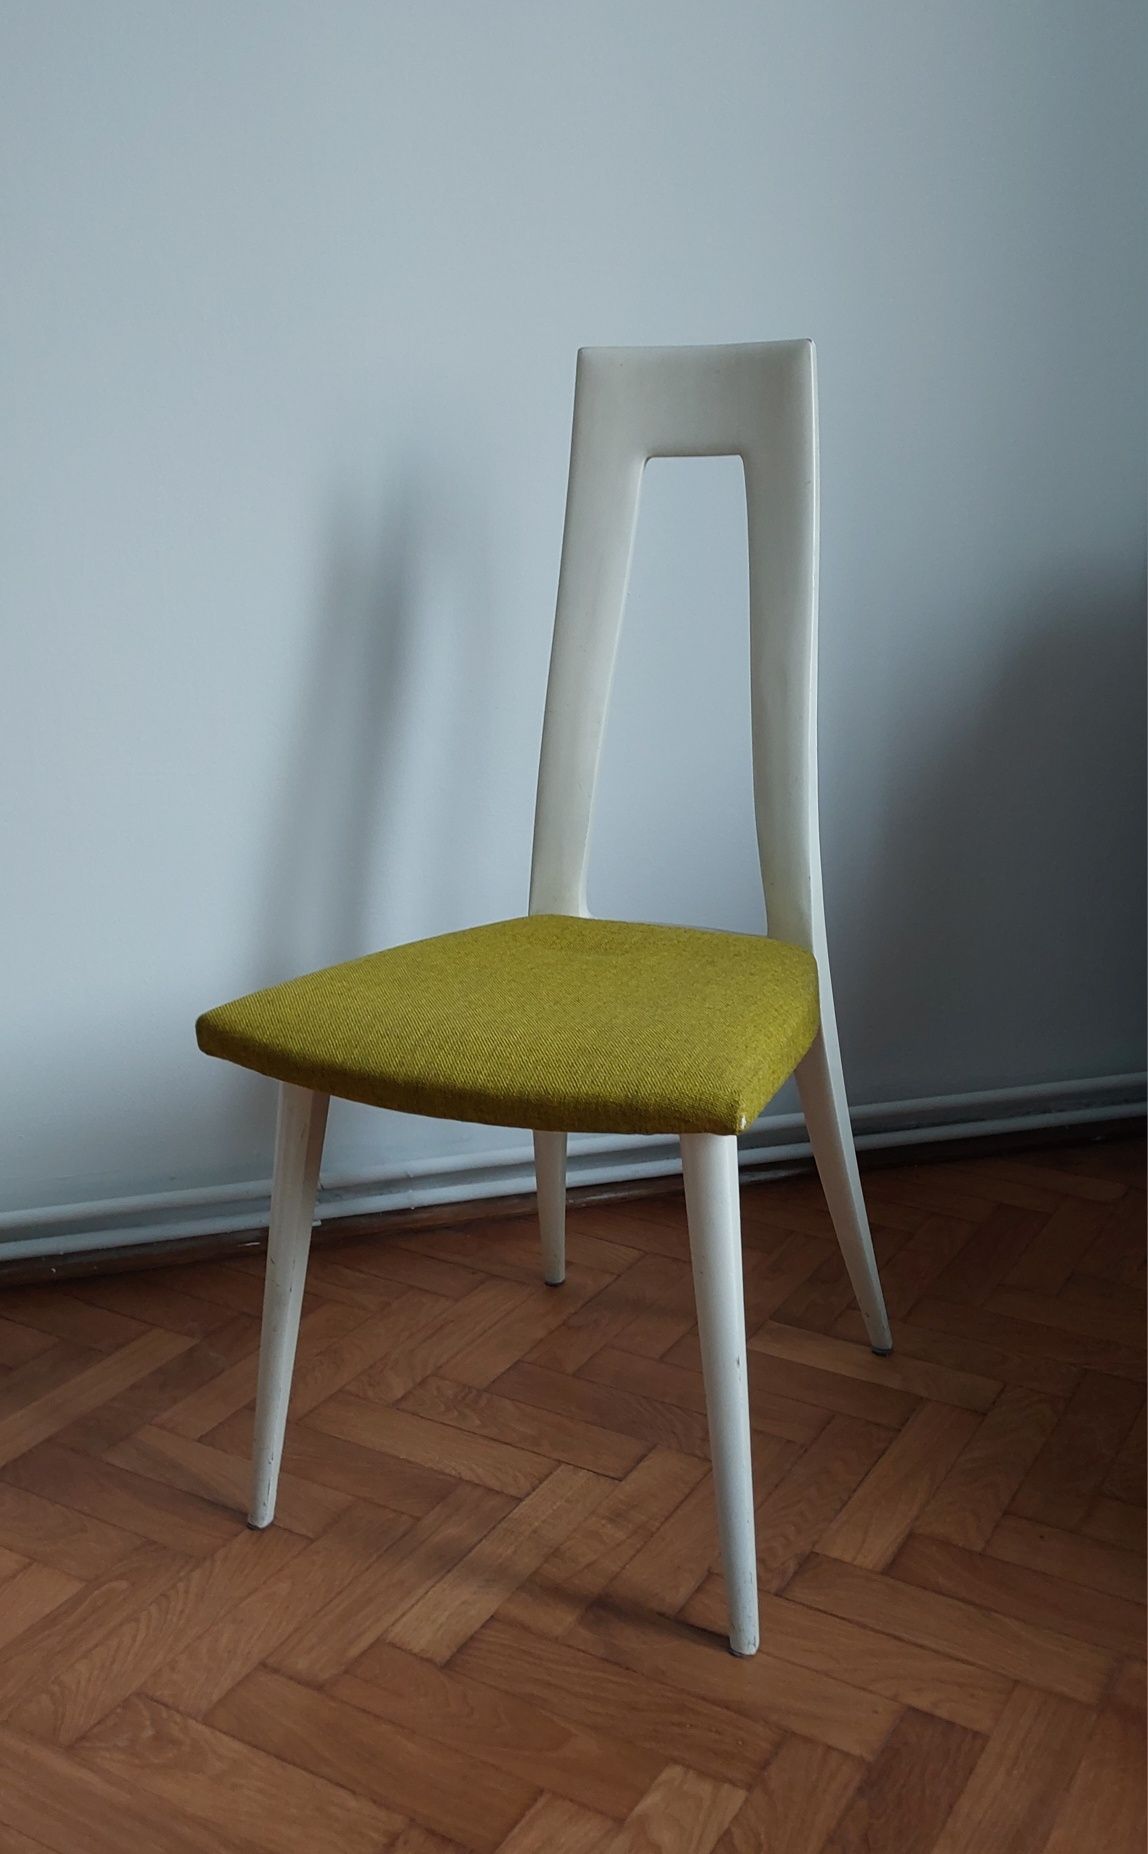 Oryginalne krzesło mid-century białe, niemiecki design, zielona tapic